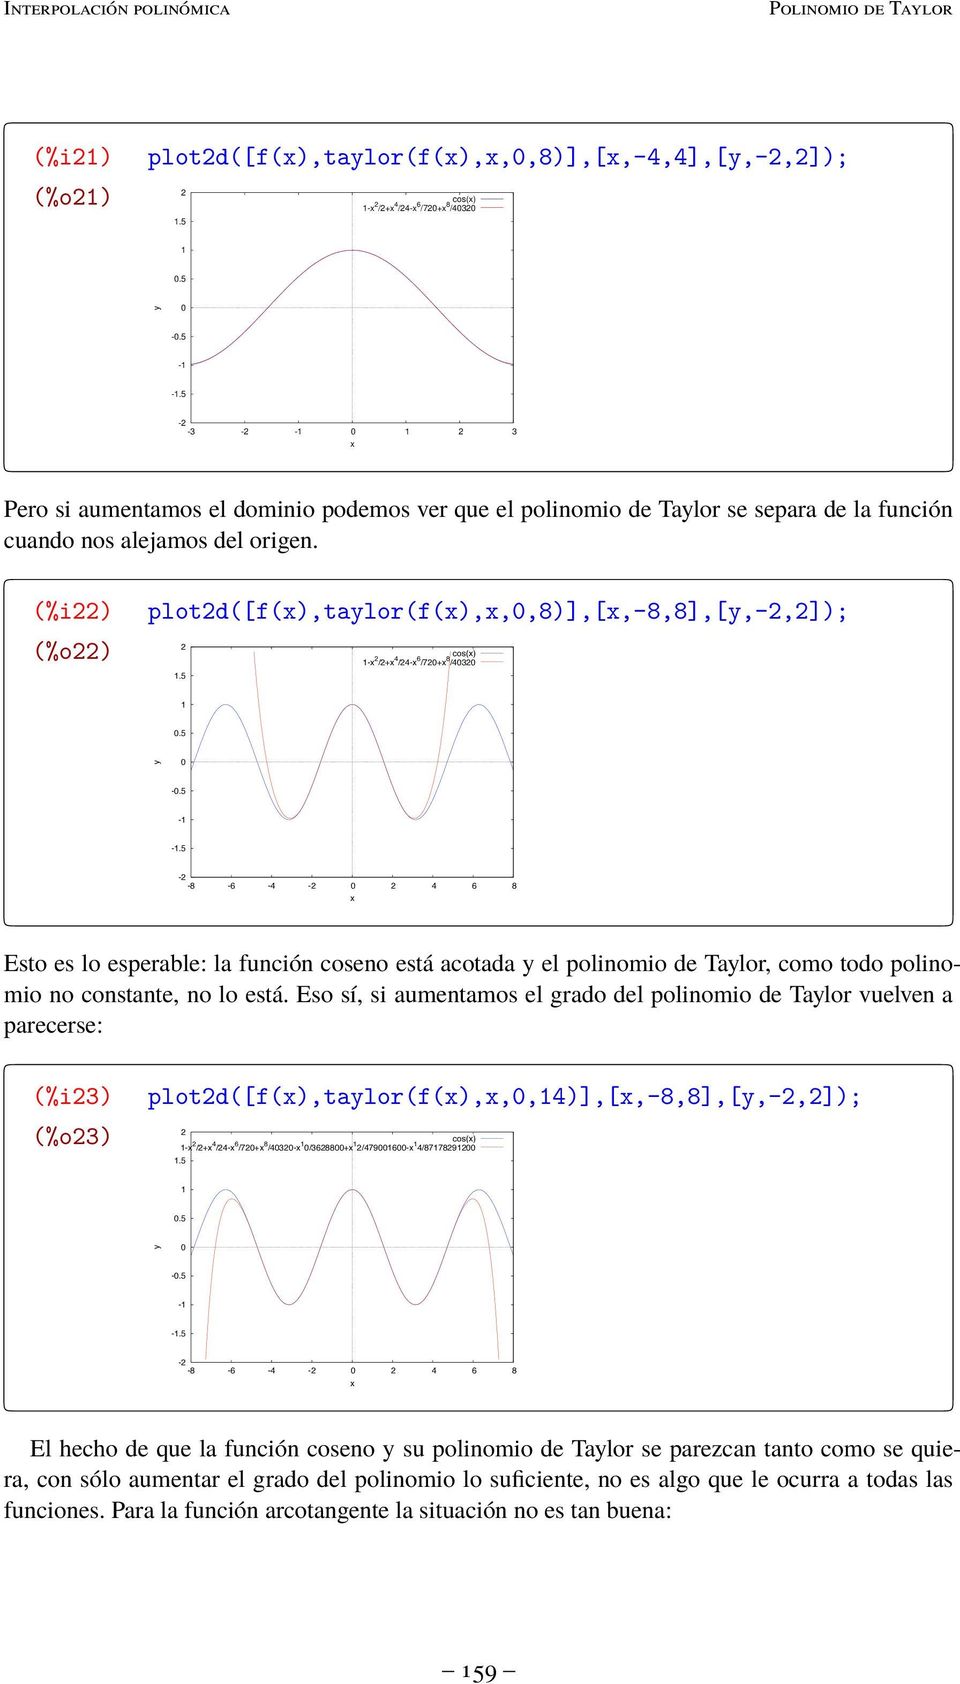 (%i) (%o) plotd([f(),talor(f(),,,8)],[,-8,8],[,-,]); cos() - /+ 4 /4-6 /7+ 8 /4.5.5 -.5 - -.